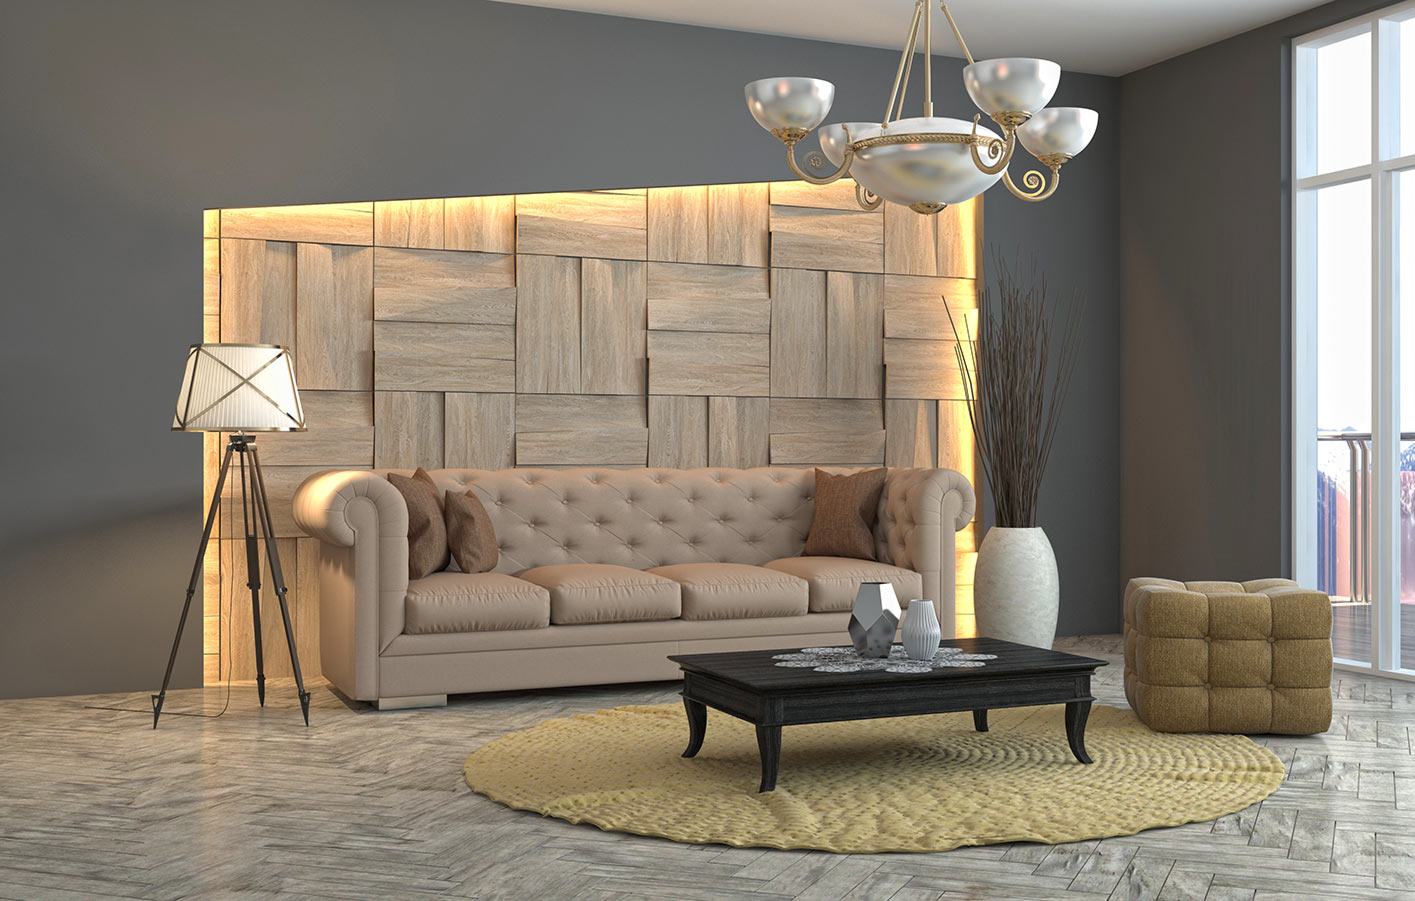 minimalistisch eingerichteter Raum mit moderner Holzwandgestaltung